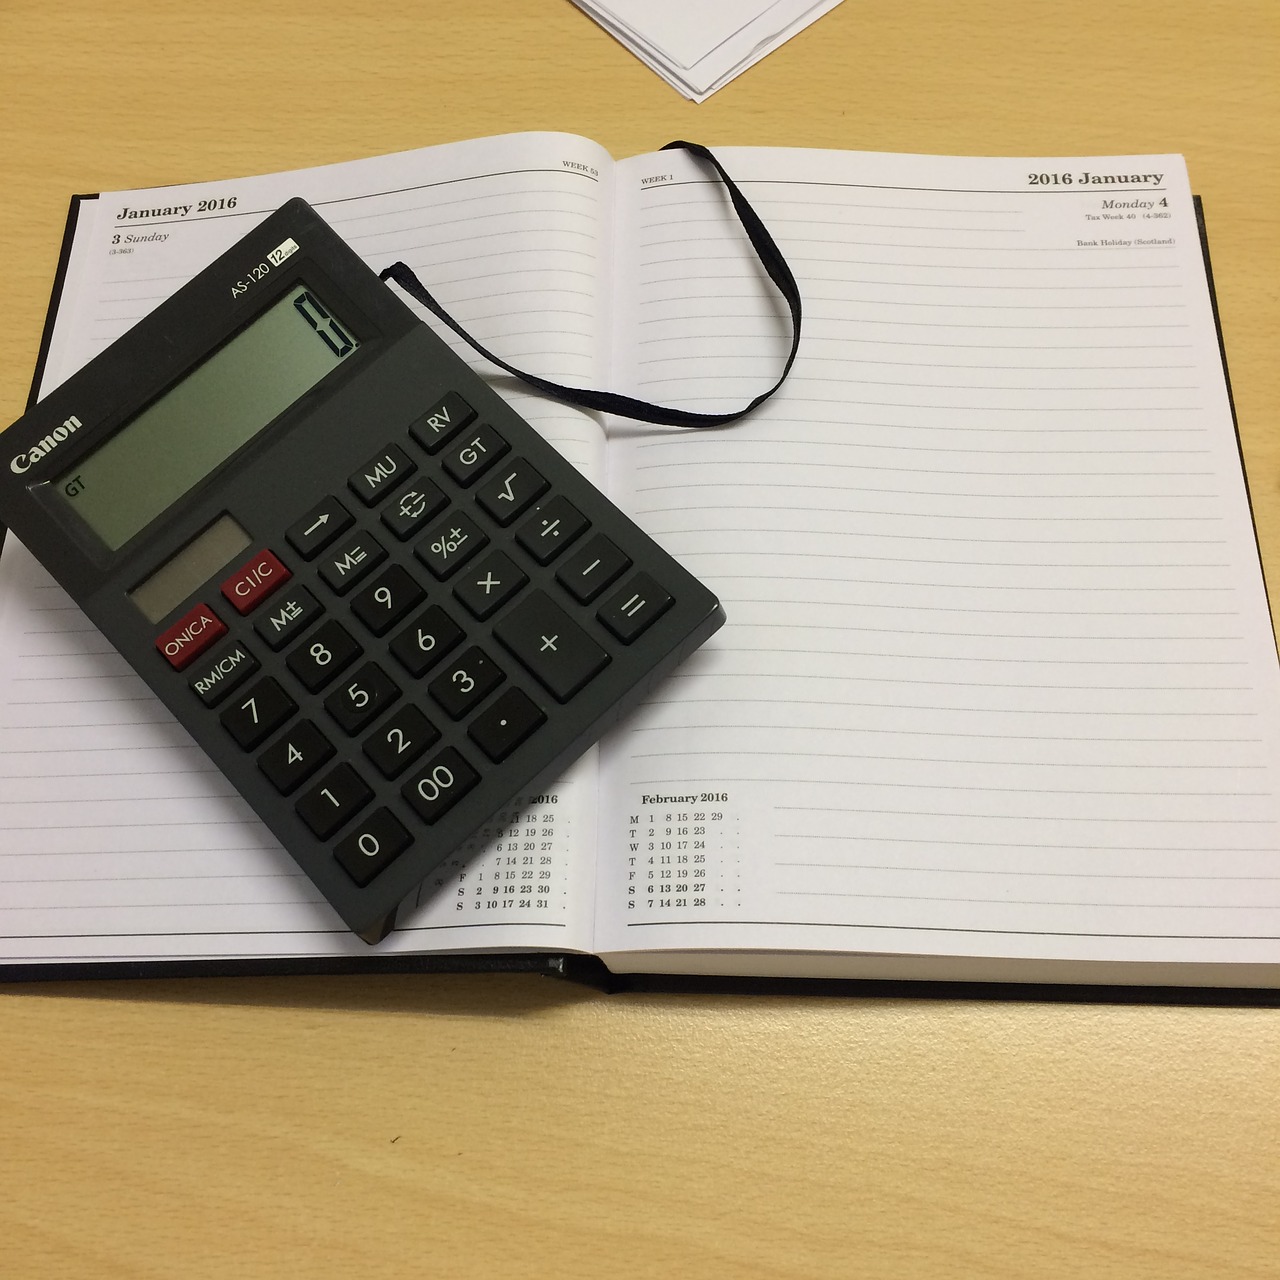 Fotografija prikazuje otvorenu bilježnicu na kojoj se nalazi džepni kalkulator.